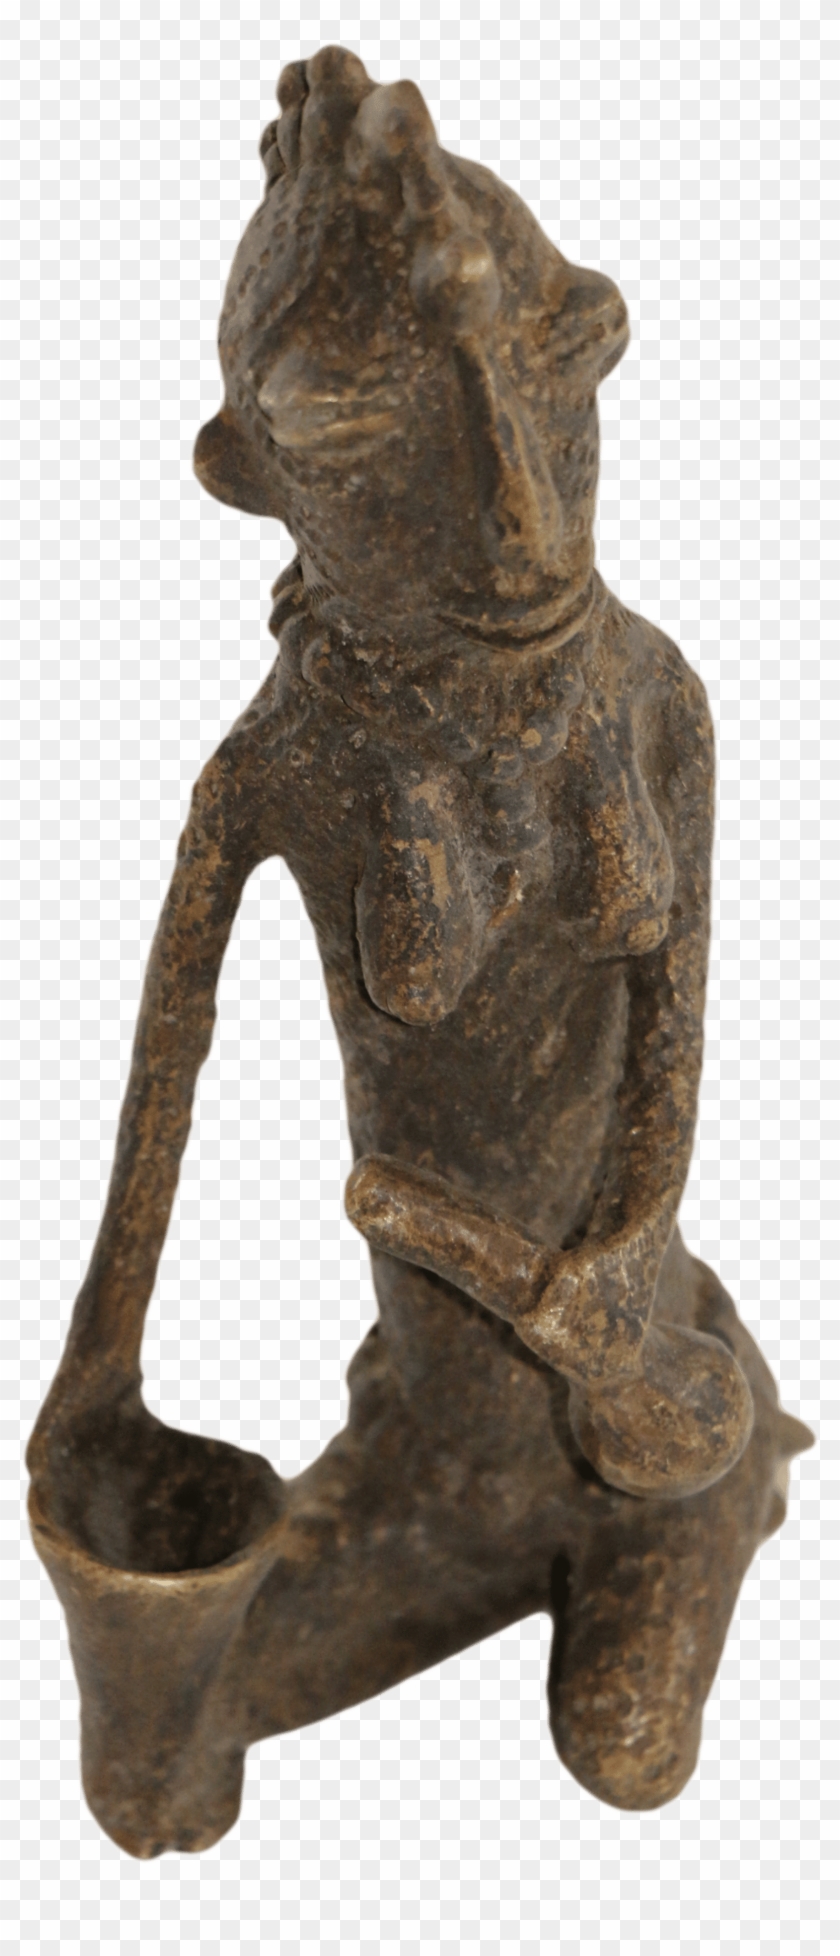 African-arte001 - Bronze Sculpture Clipart #2944651